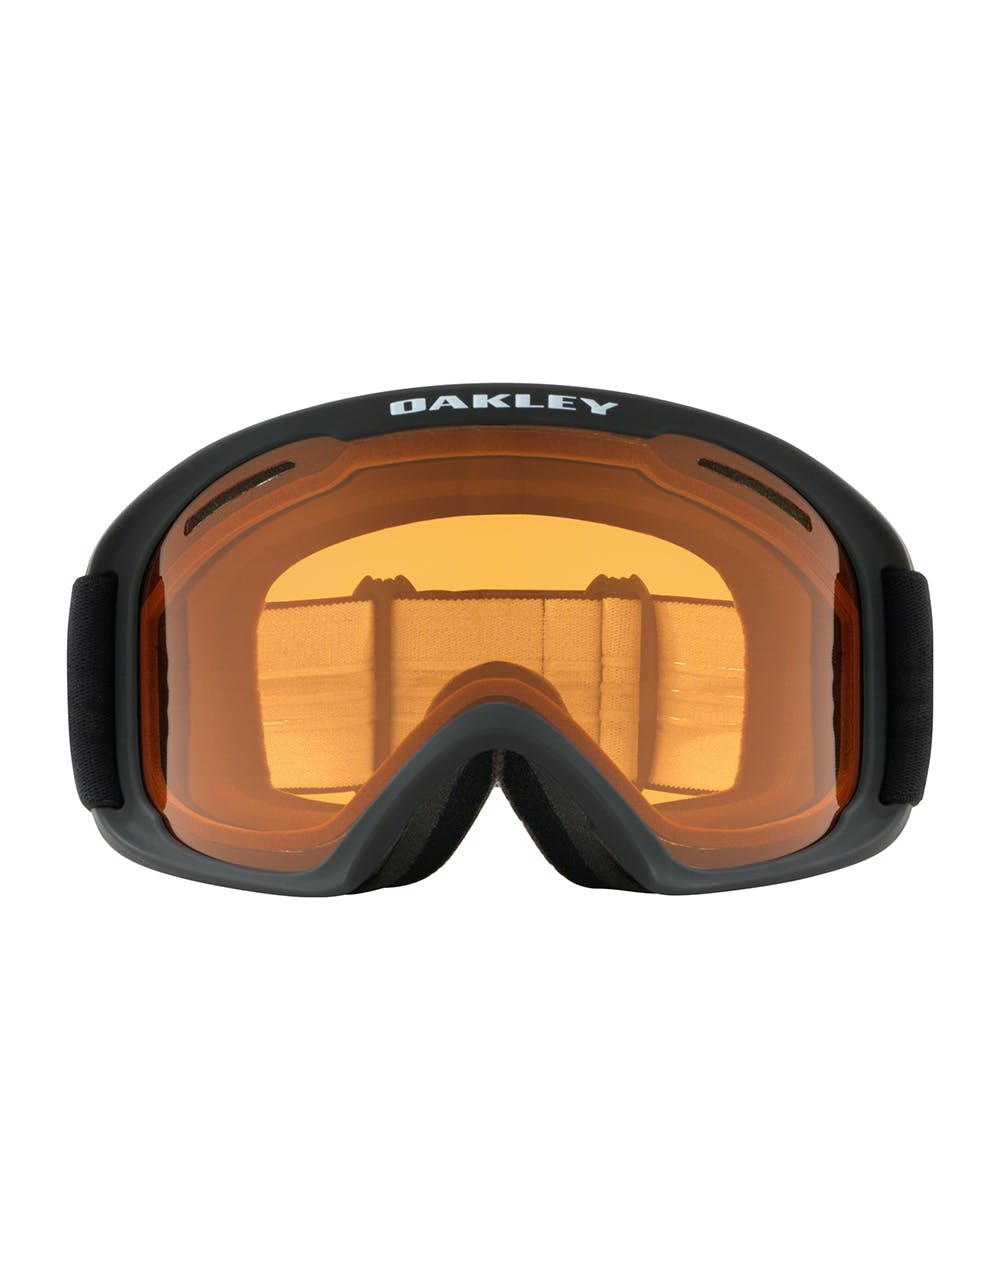 Oakley O Frame 2.0 Pro XL Snowboard Goggles - Black/Persimmon